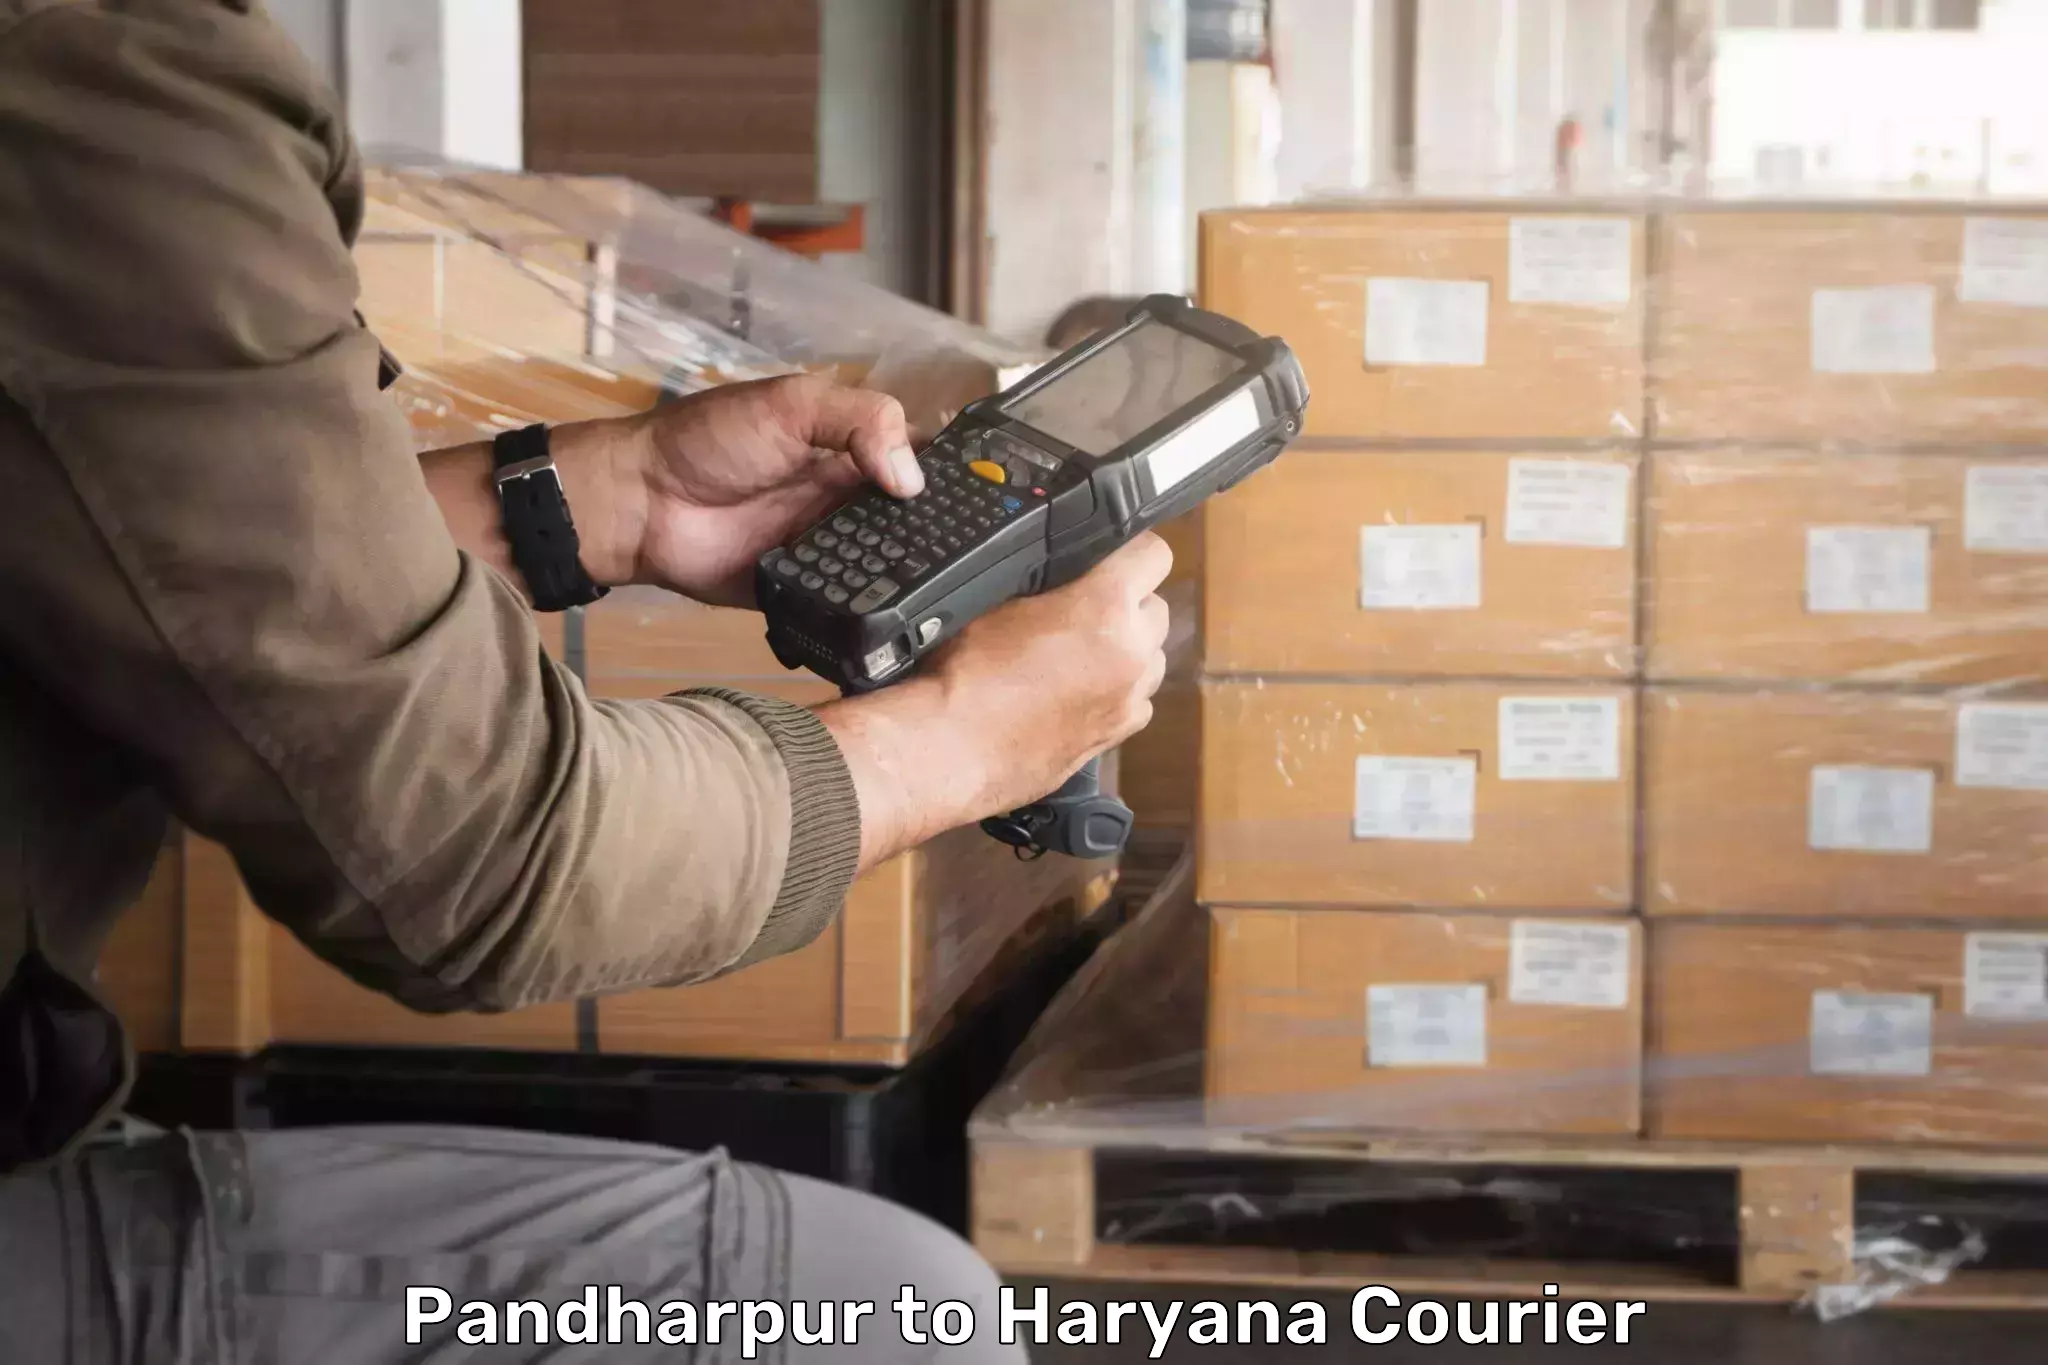 Seamless shipping experience Pandharpur to Panchkula